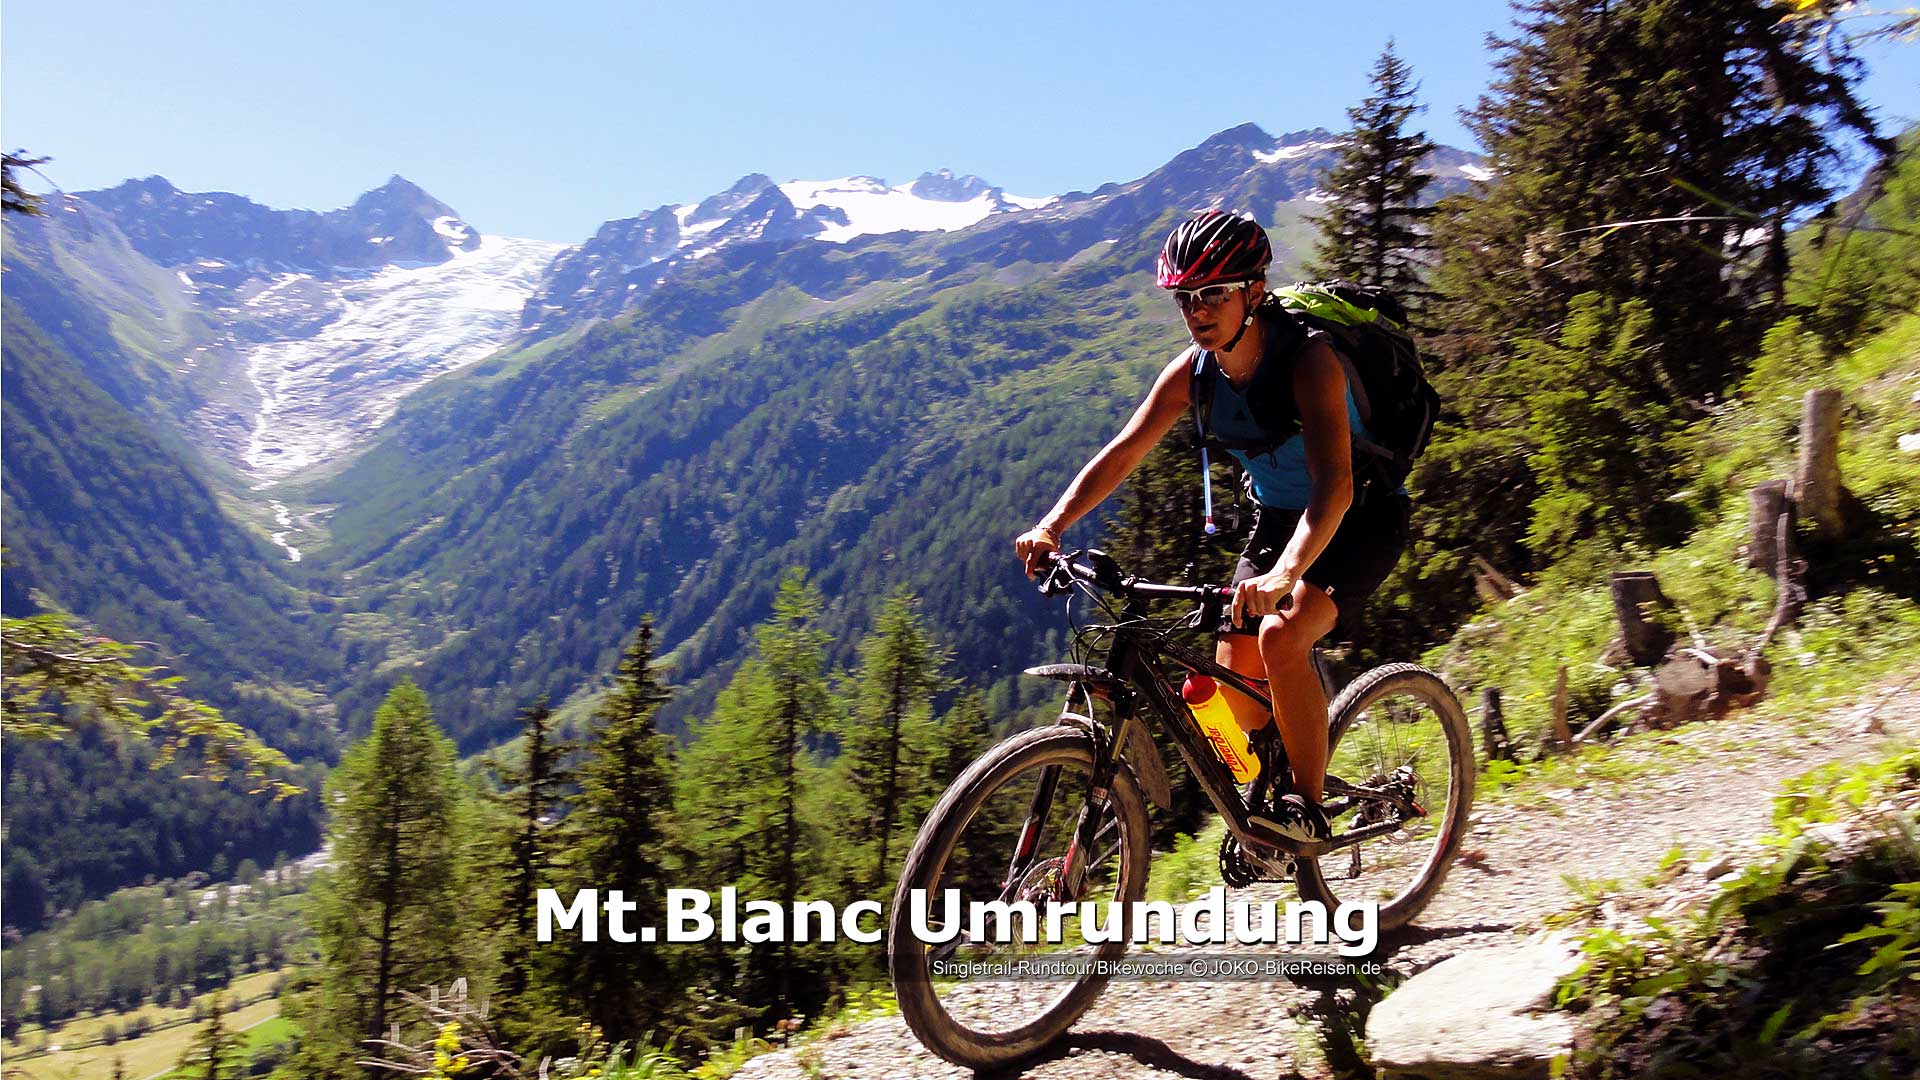 Bikewoche/Mountainbike Montblanc Umrundung/Singletrail